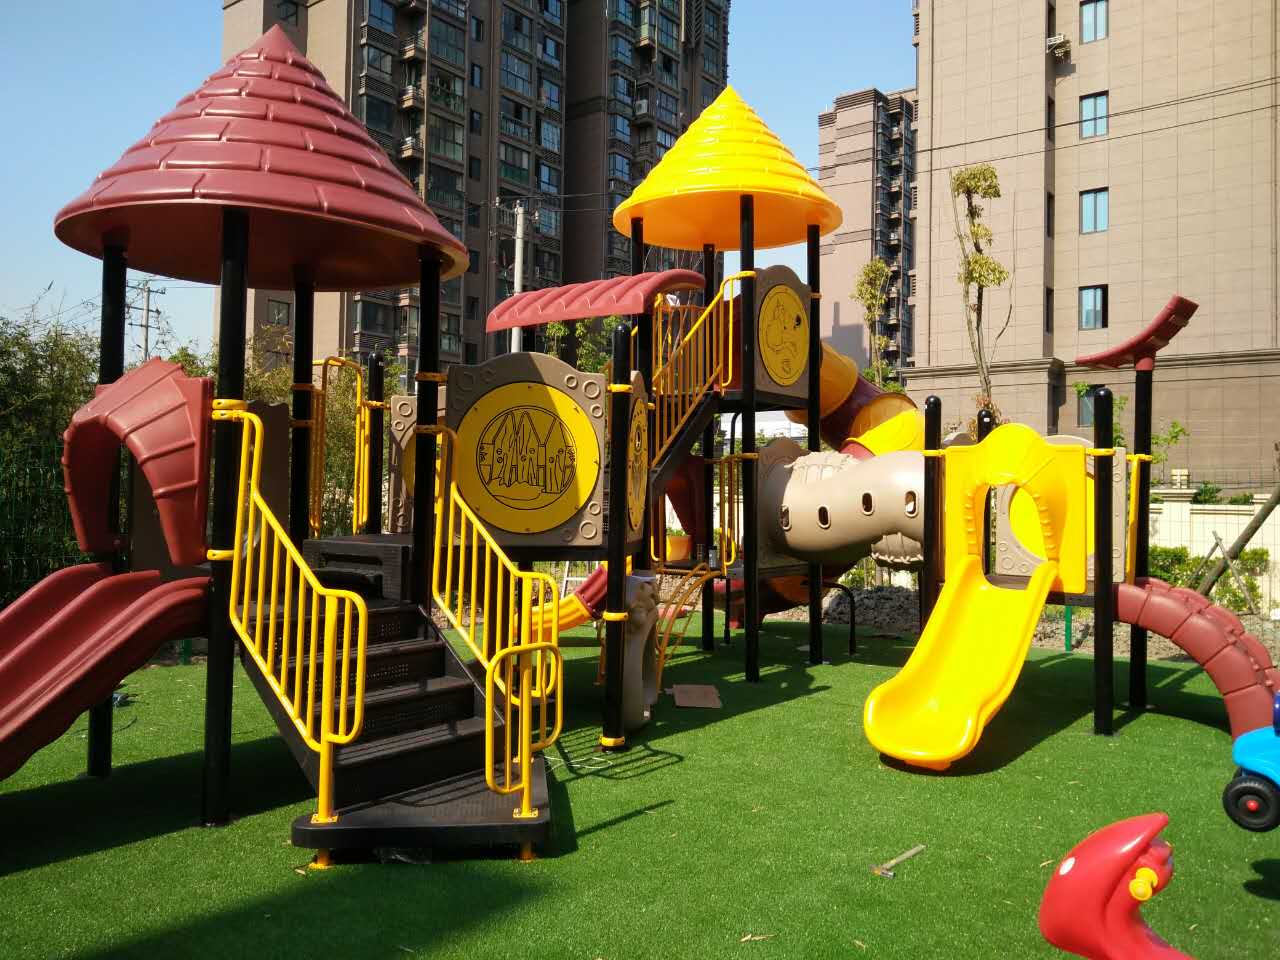 Children Outdoor Playground Equipment for Preschool Daycare